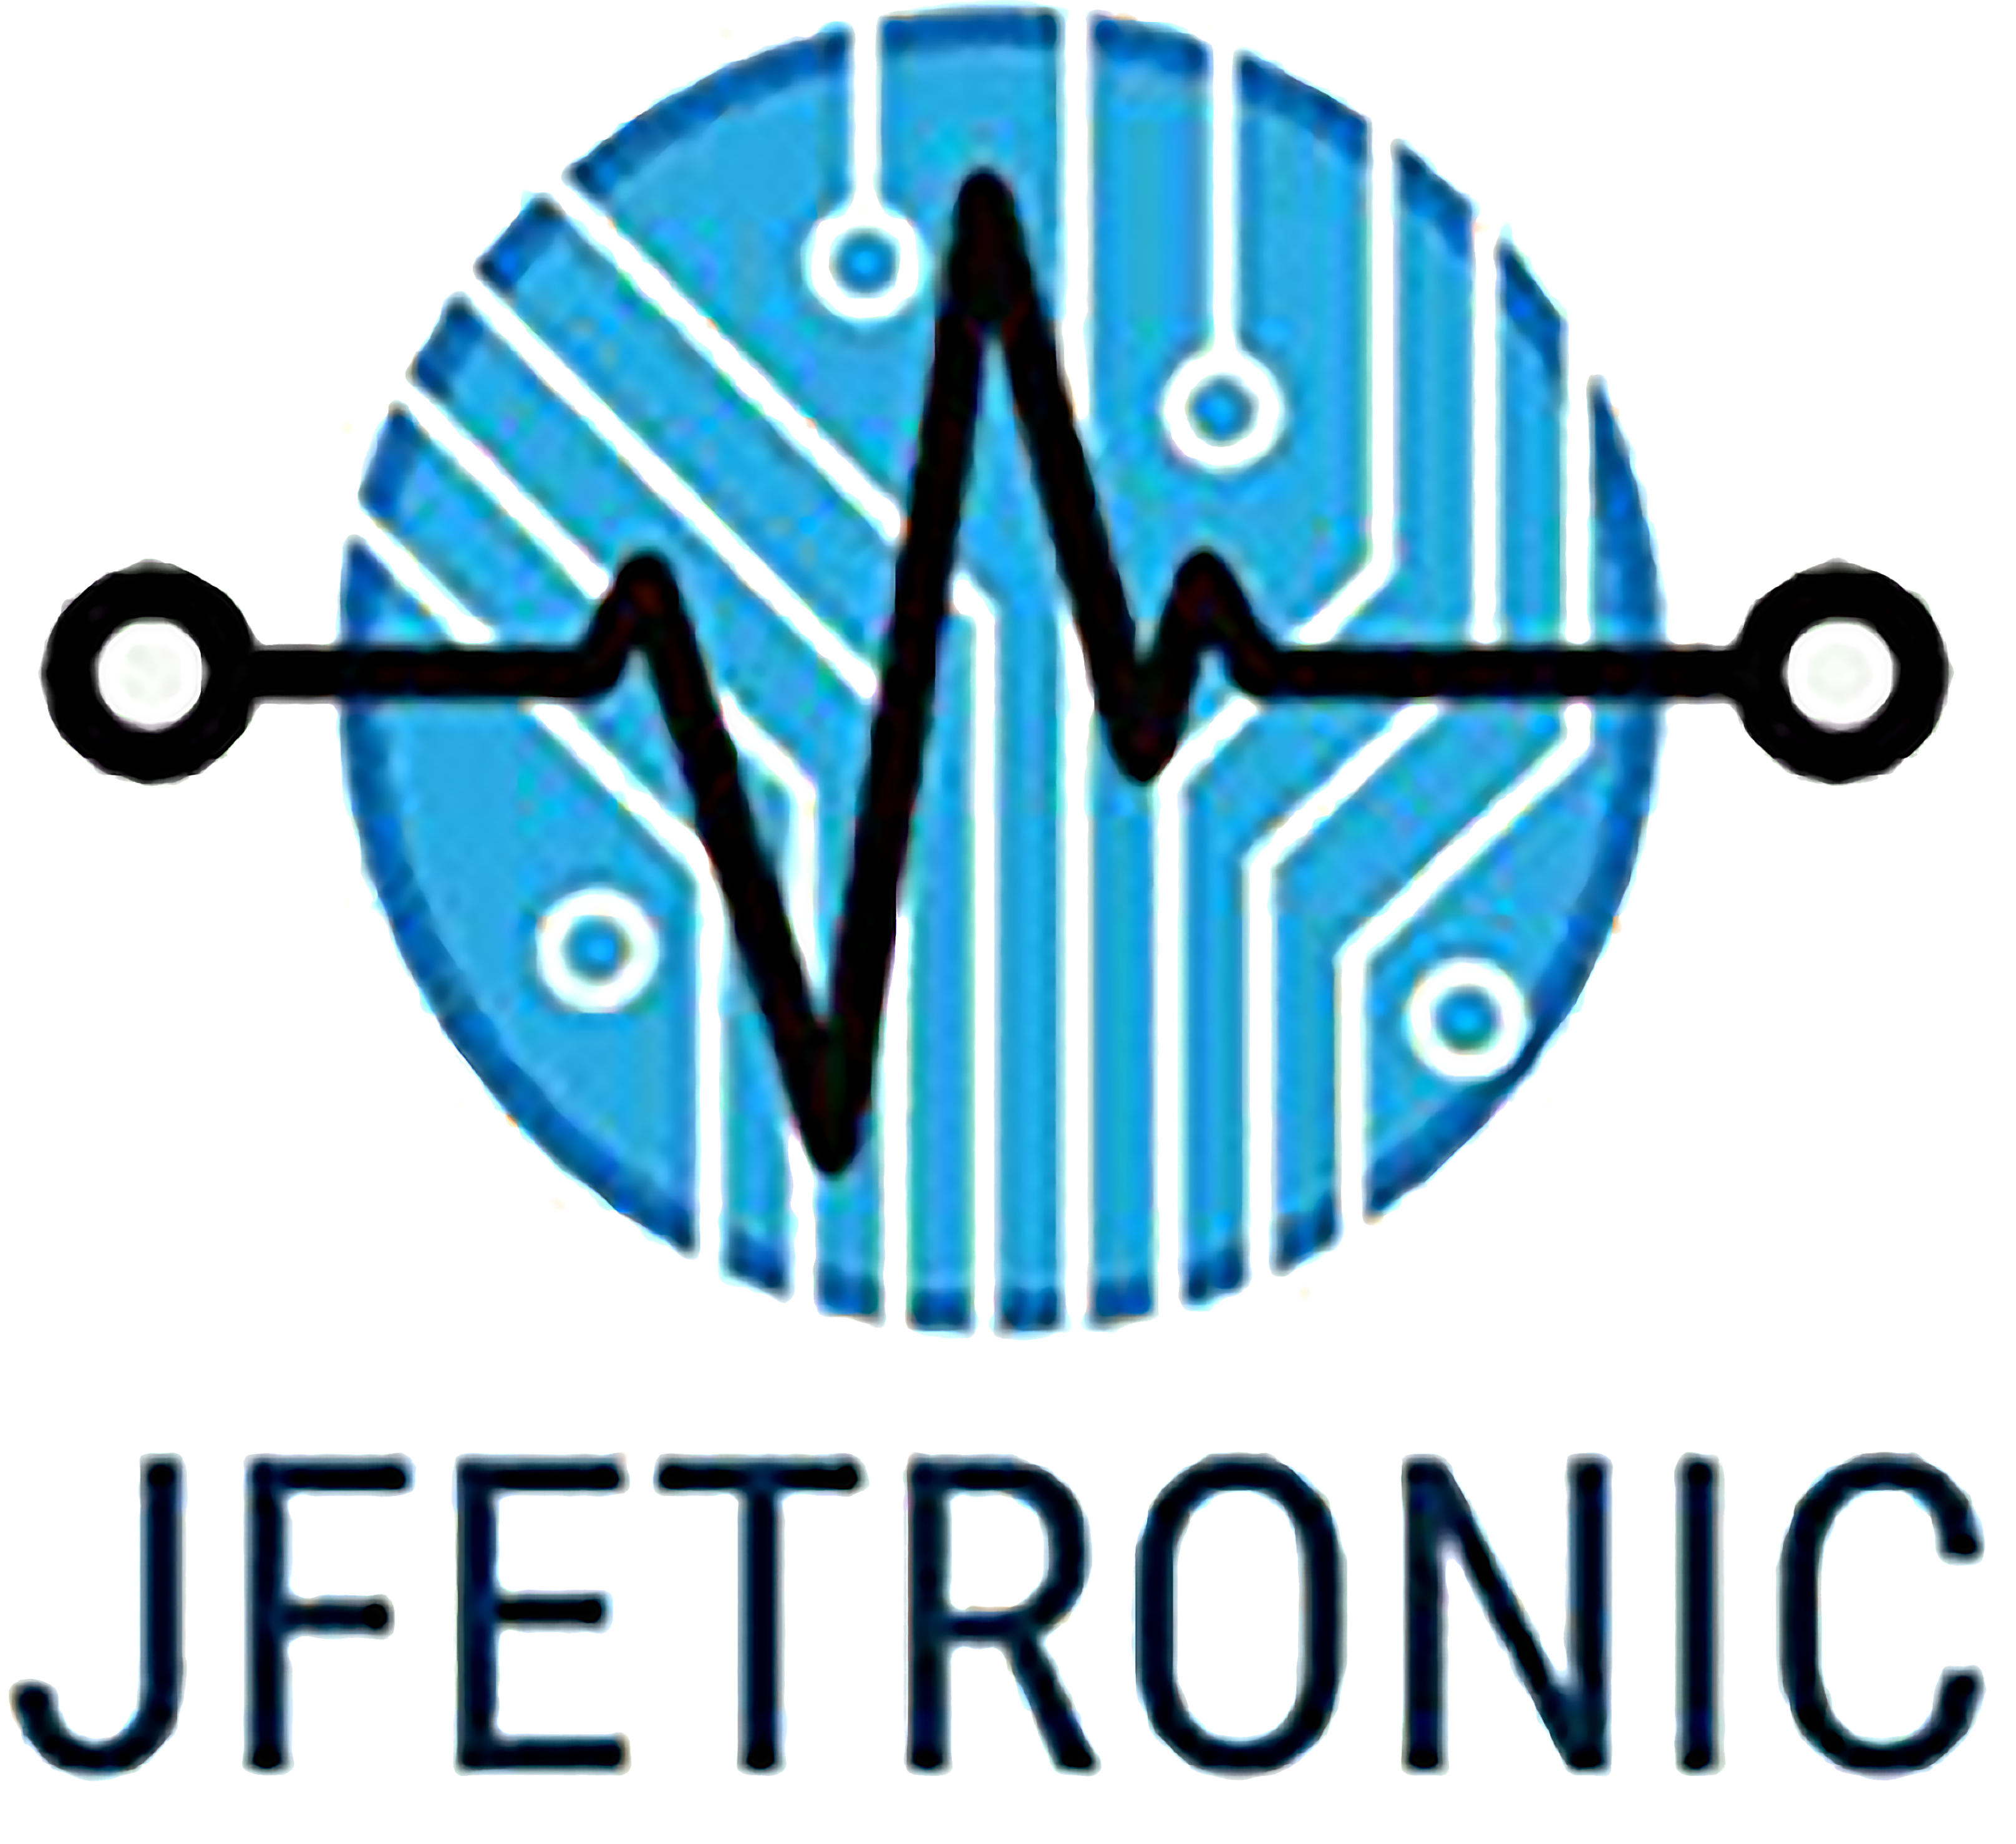 jfetronic: Electrónica y más